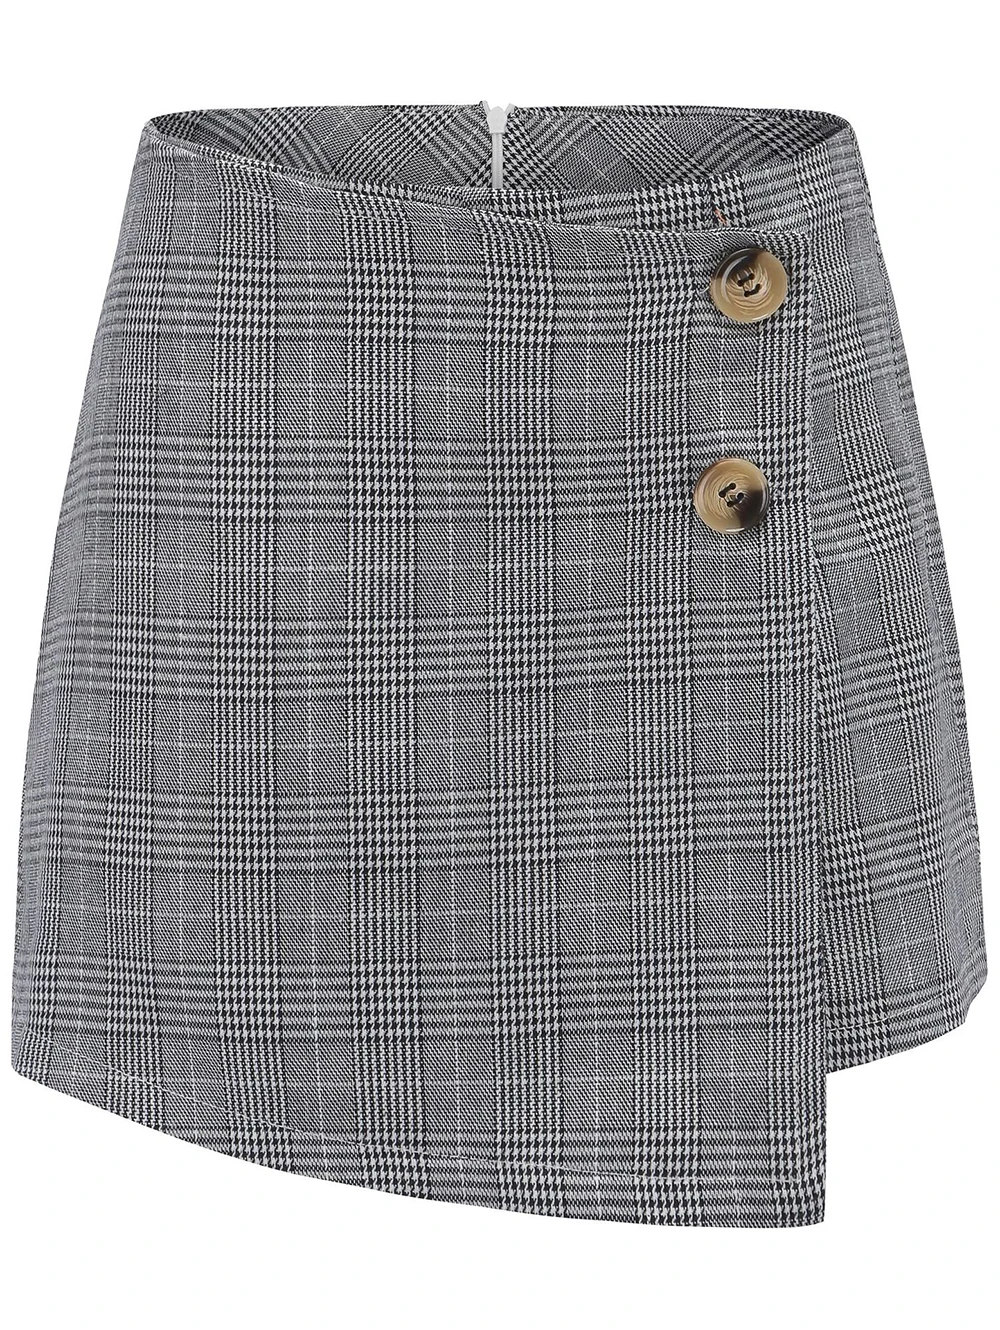 Sovalro, асимметричные Женские шорты, средняя талия, обтягивающие, с геометрическим принтом, повседневные шорты, летние, женские, на пуговицах, юбки-карандаш, шорты - Цвет: Gray